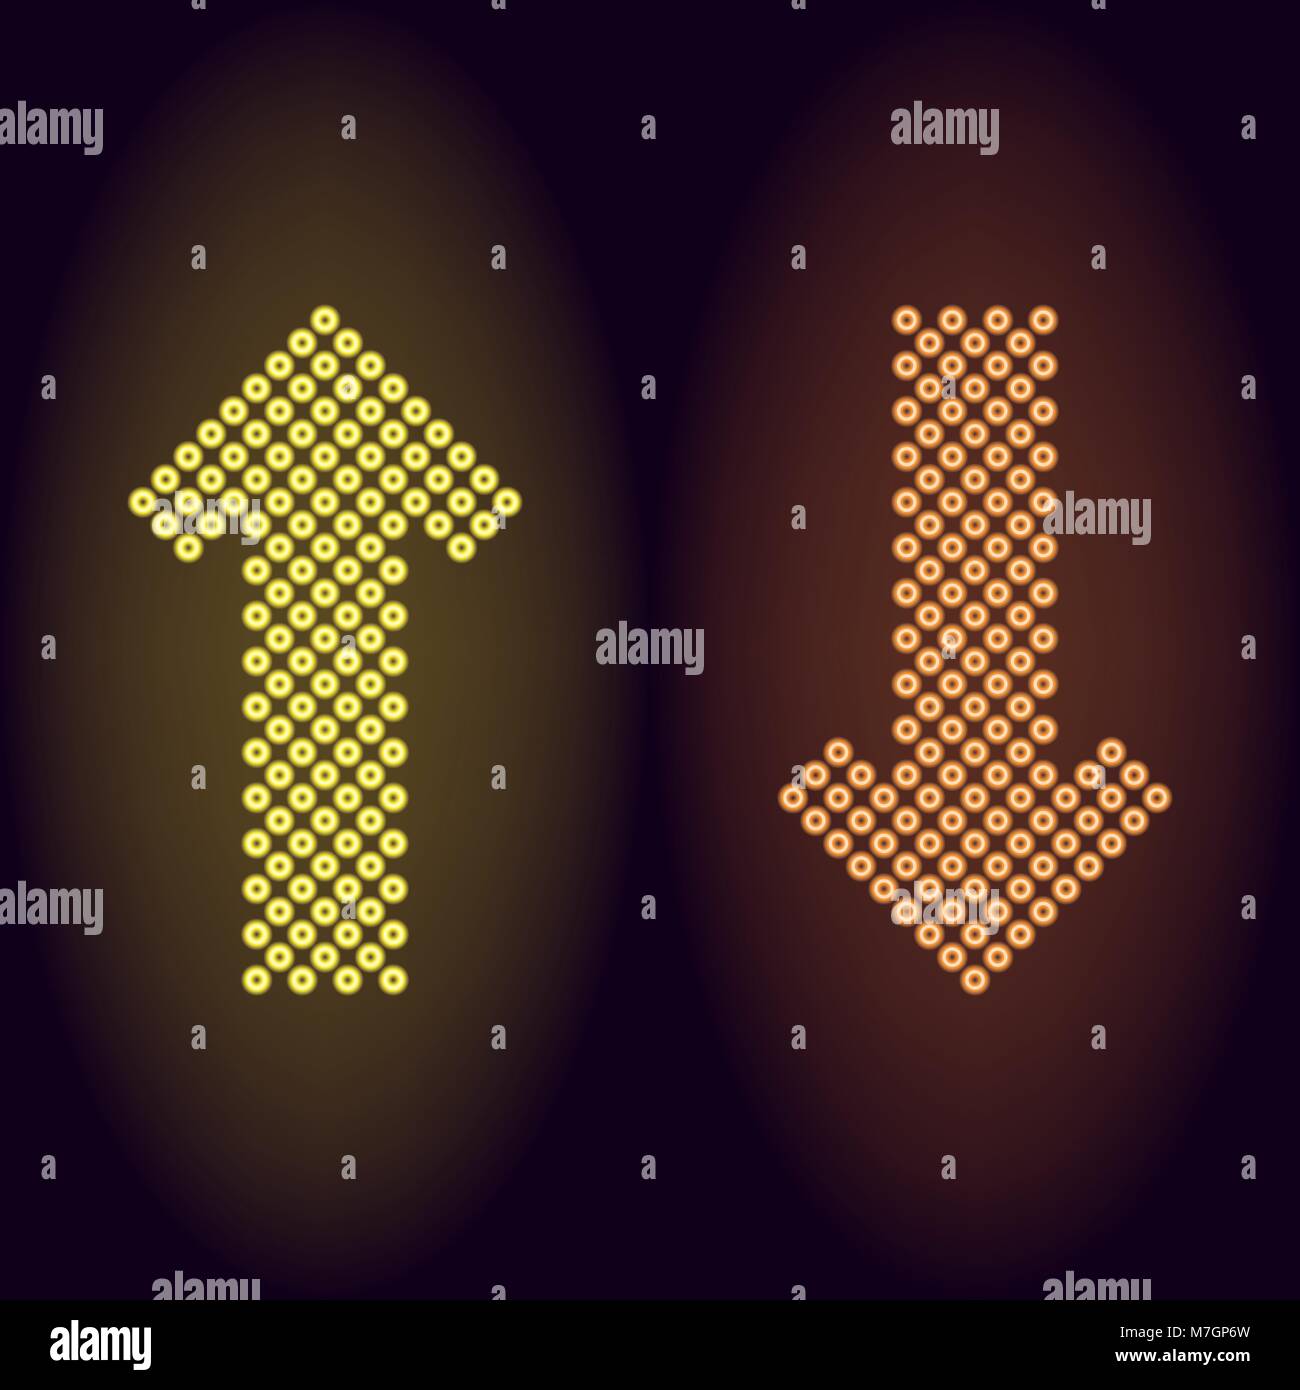 Flecha de neón amarillo y naranja con anillos. Ilustración vectorial de larga flecha de neón que consta de muchos anillos con retroiluminación del fondo oscuro Ilustración del Vector